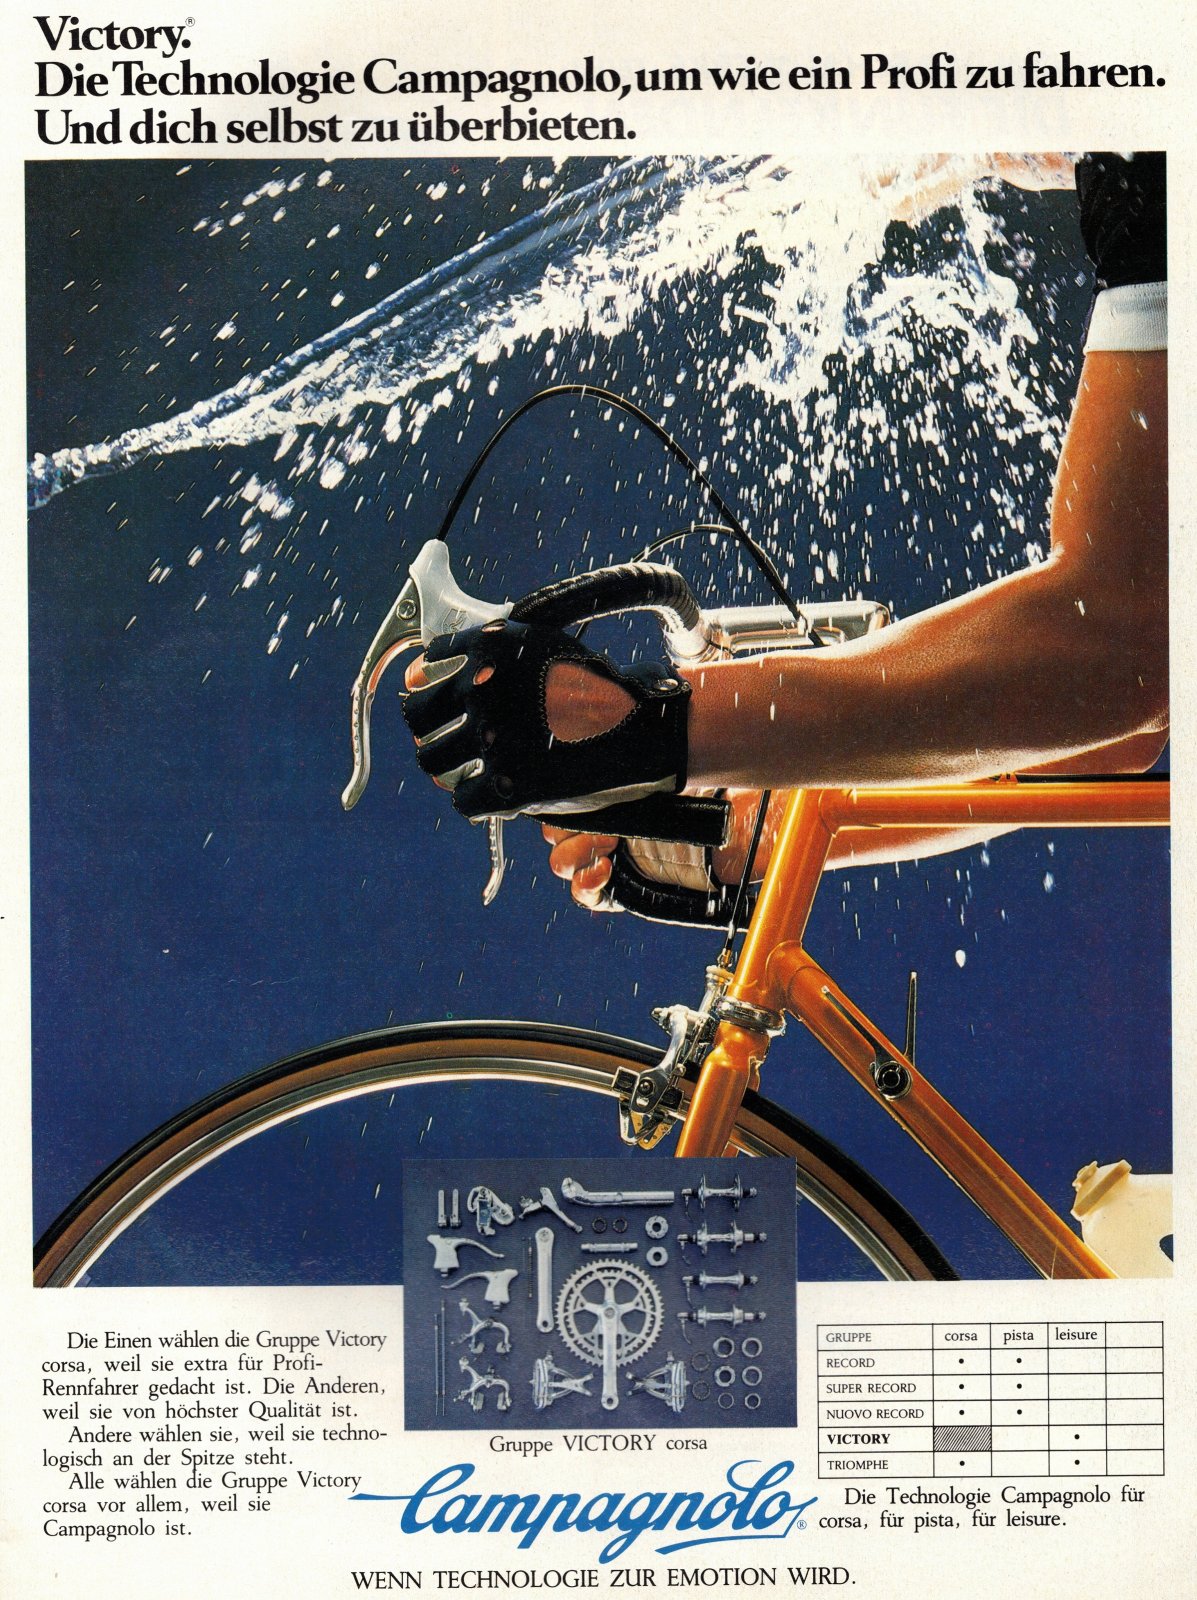 1985 Tour Campagnolo Victory Werbung.jpg